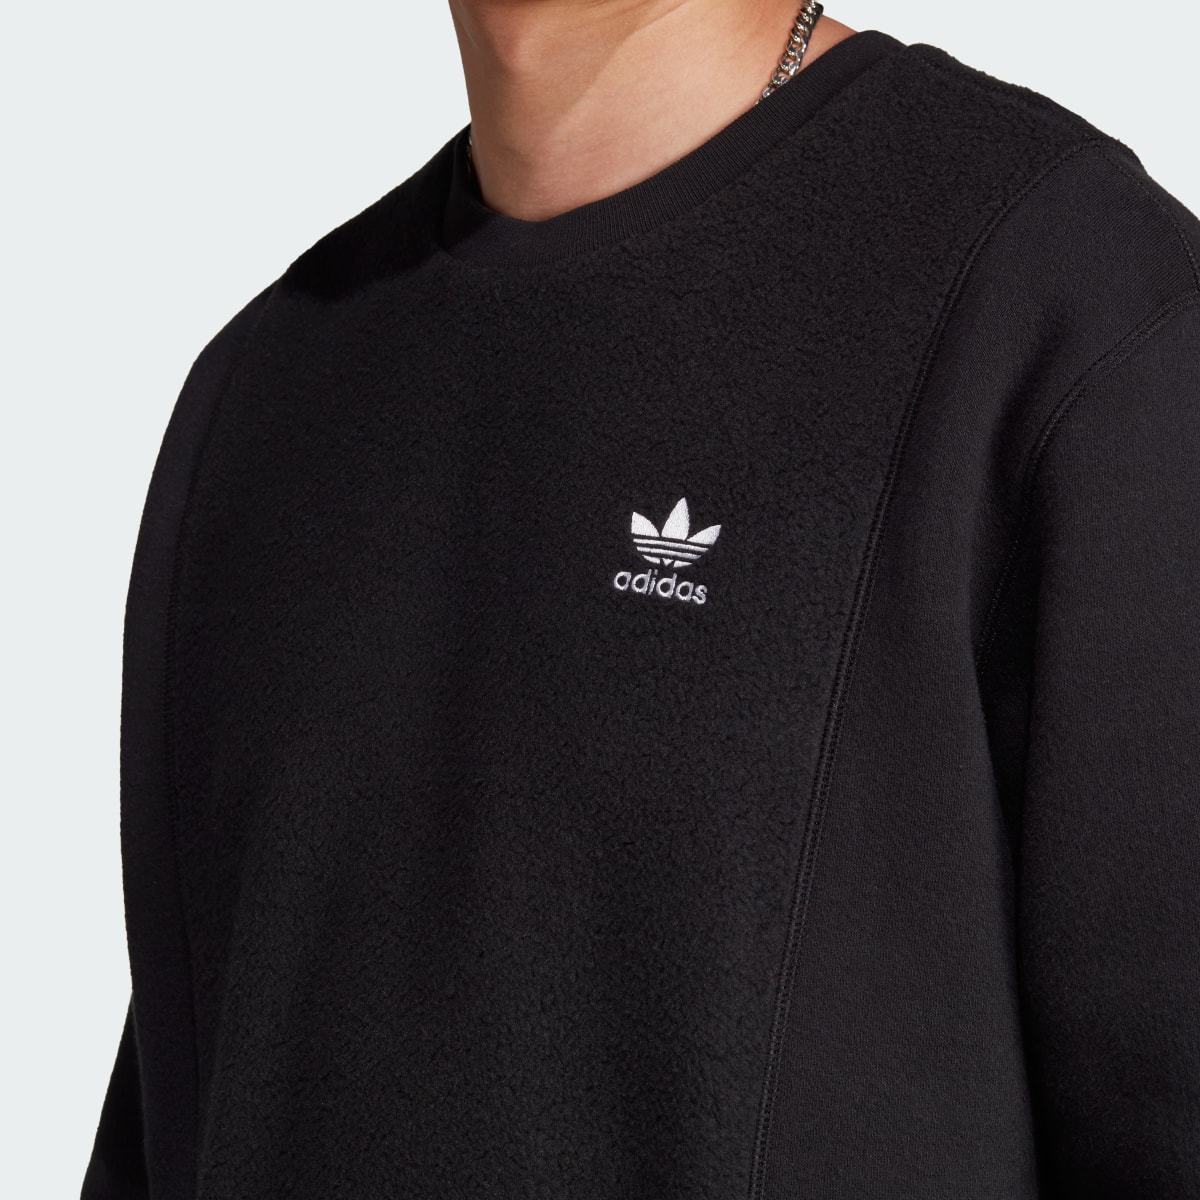 Adidas Essentials+ Trefoil Reverse Material Crew Sweatshirt. 6